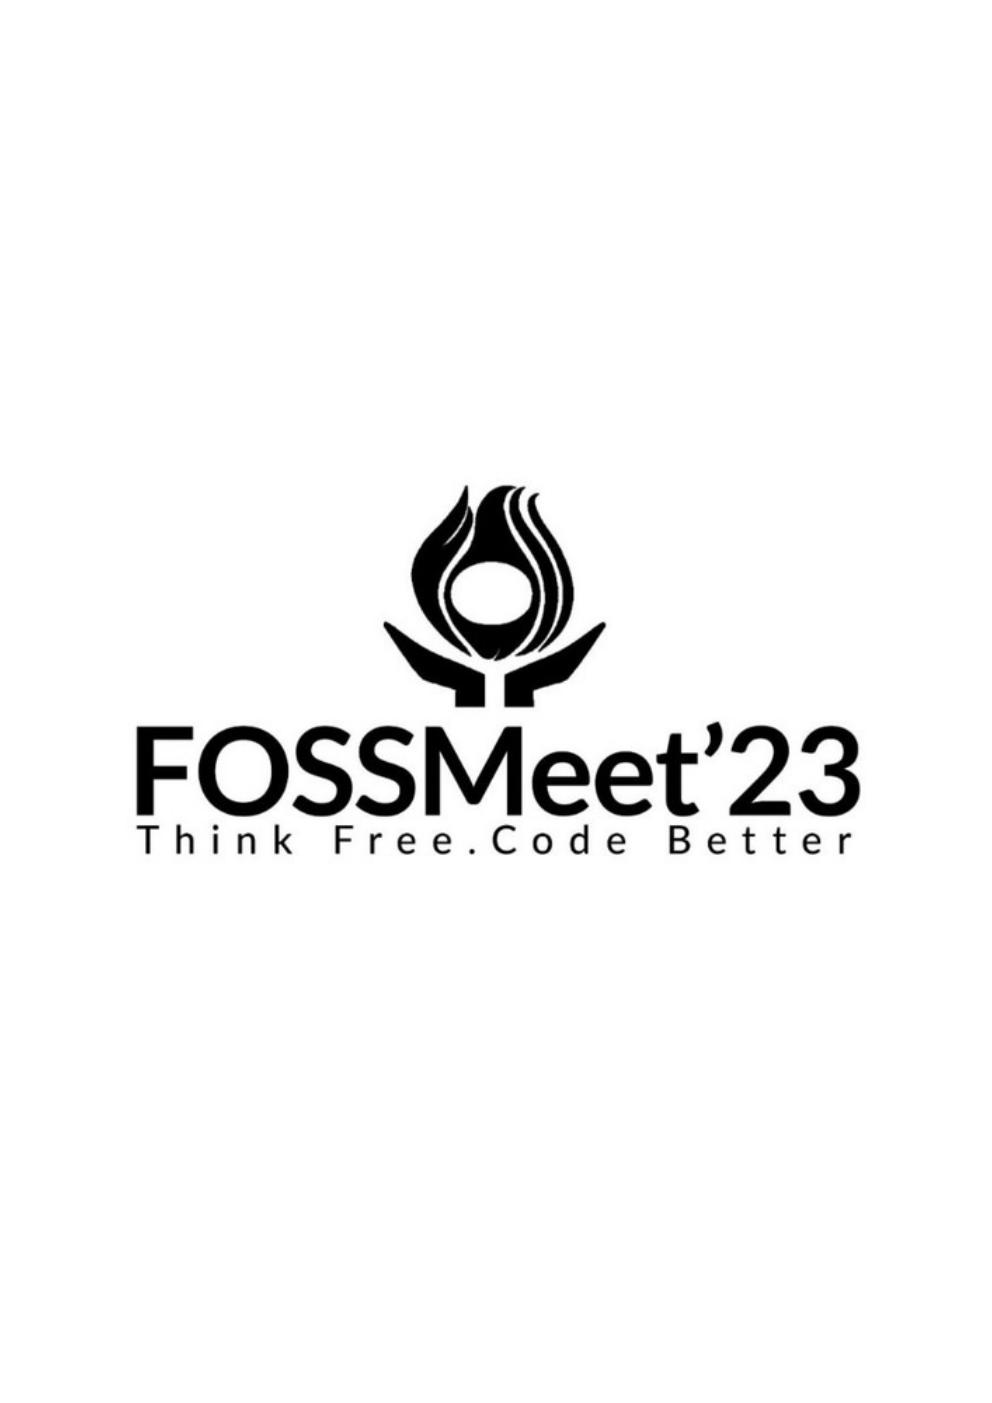 FOSSMeet'23